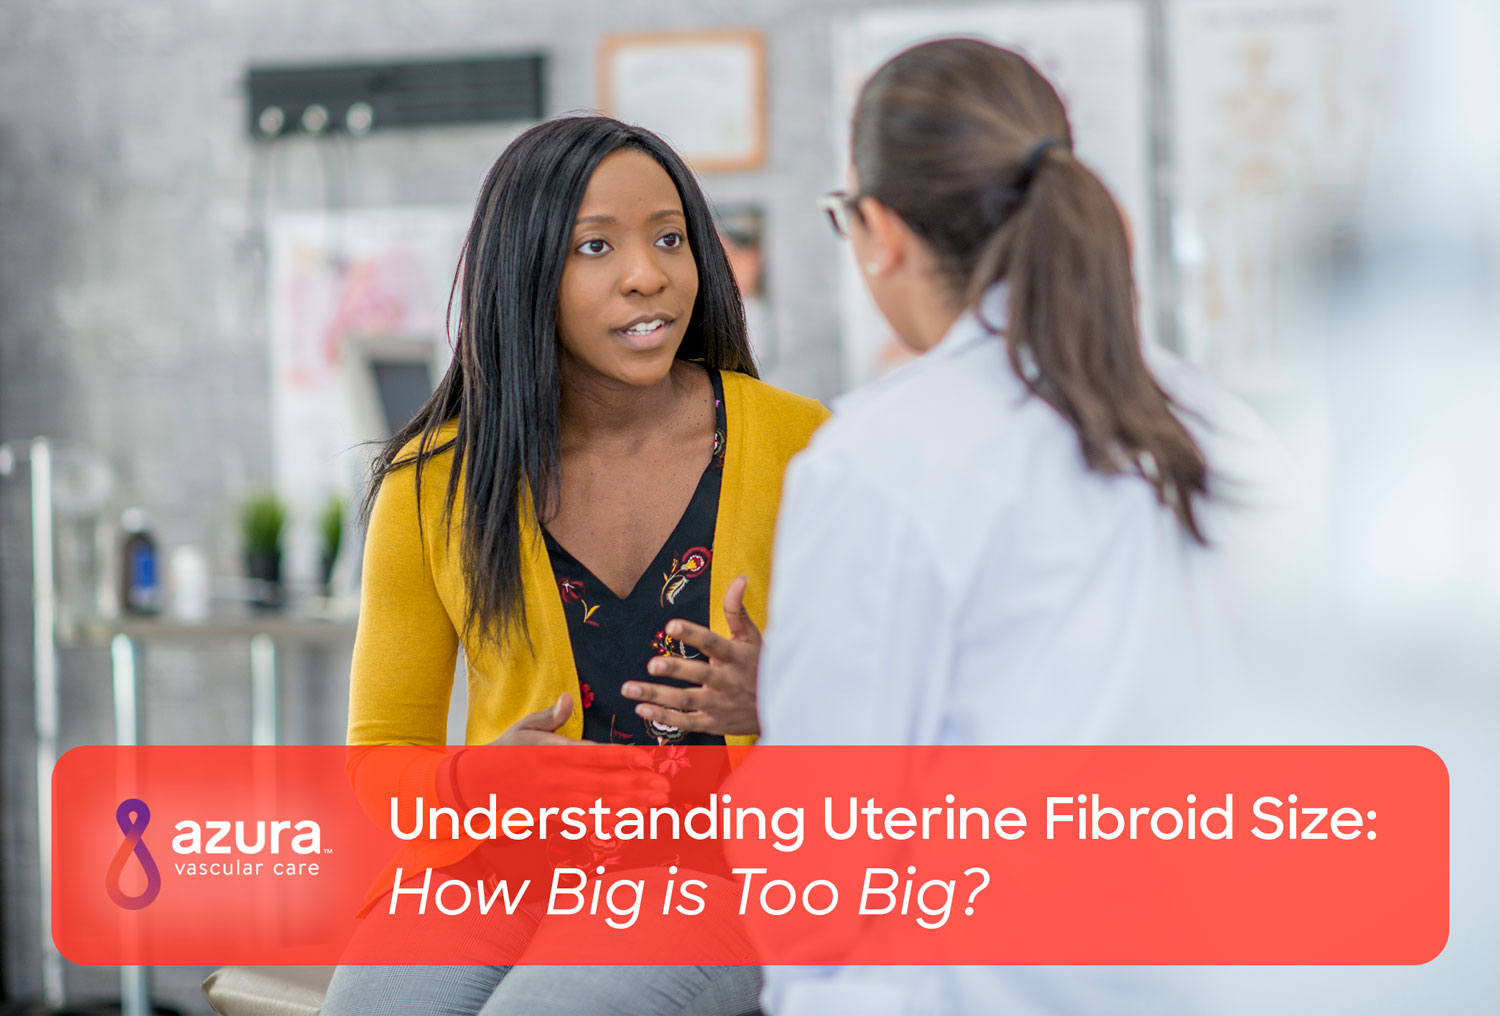 https://www.azuravascularcare.com//assets/Understanding-Uterine-Fibroid-Size-How-Big-is-Too-Big.jpg